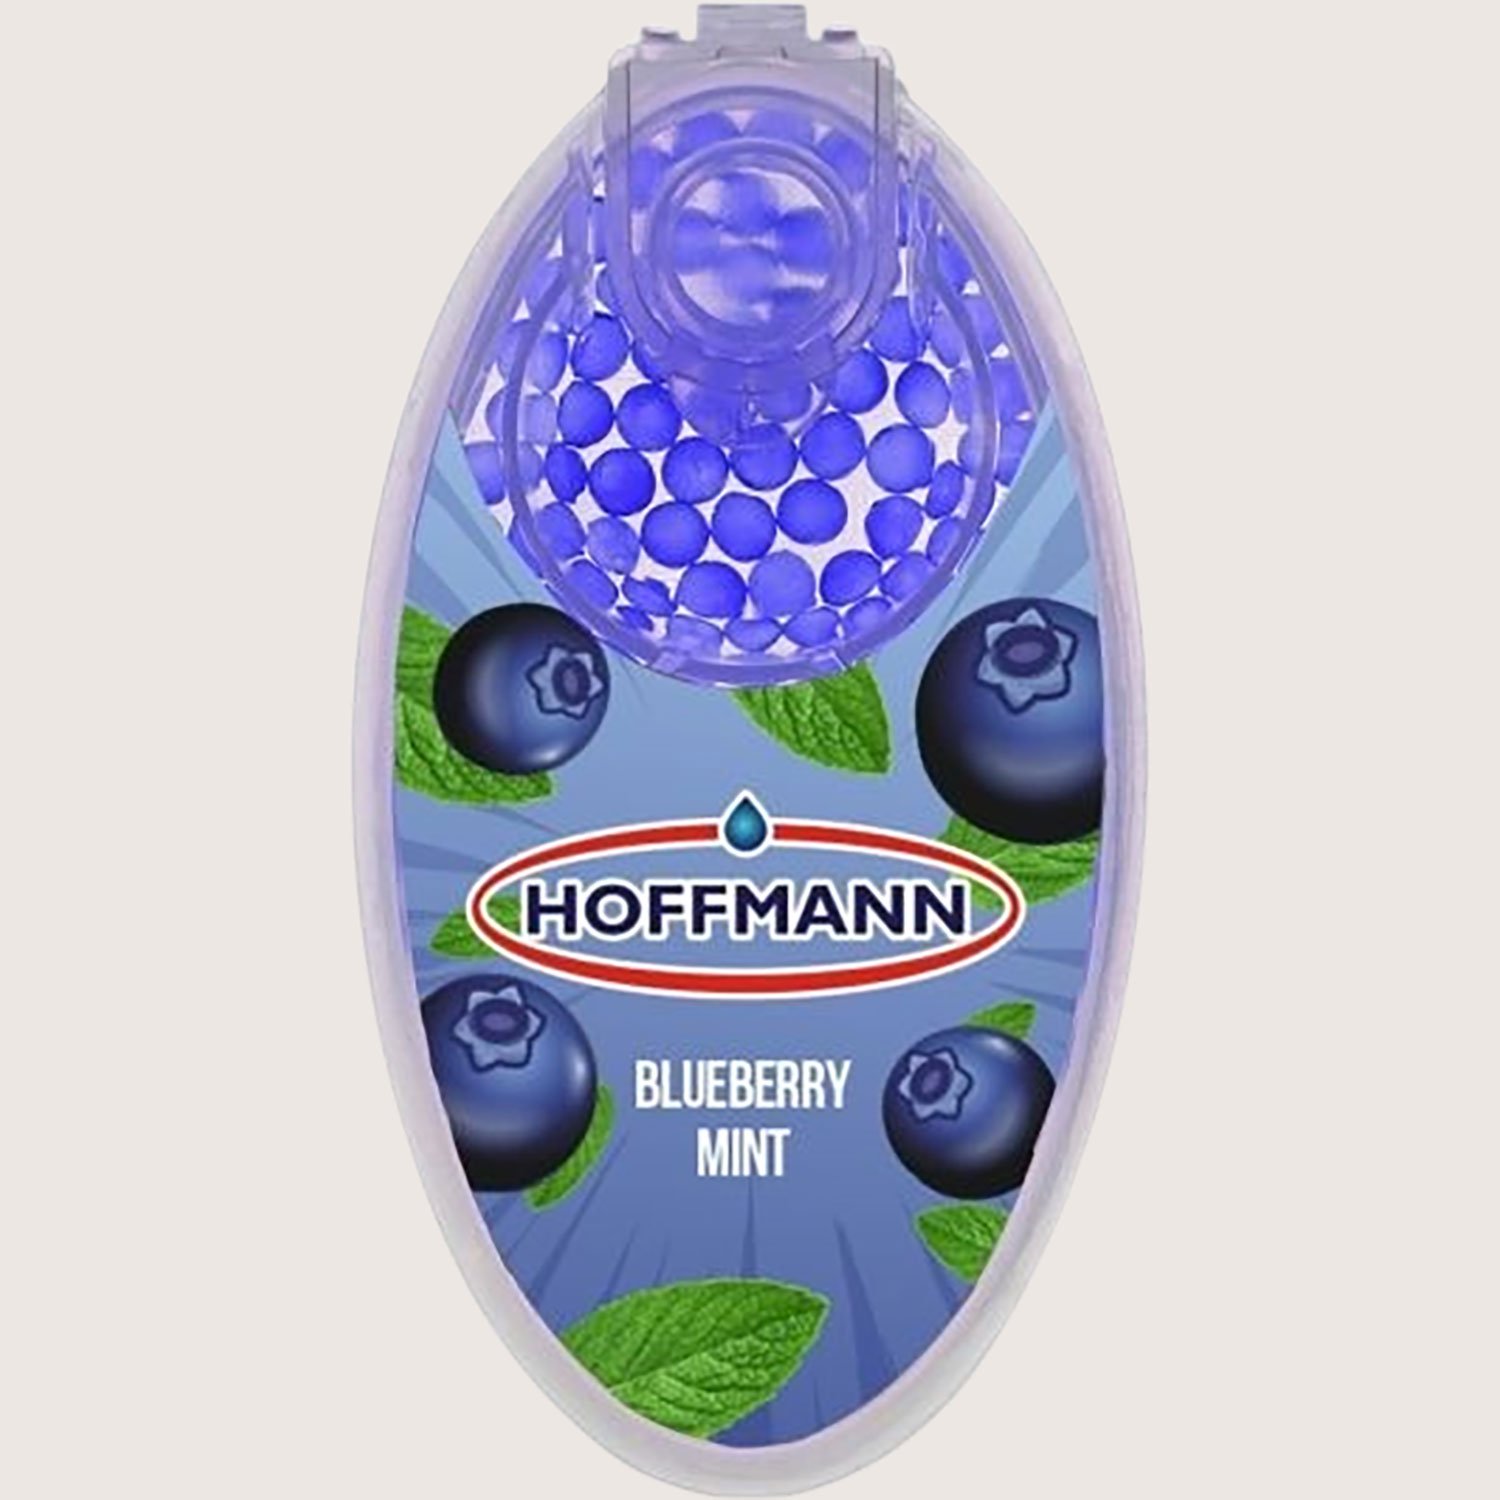 Hoffmann Aromakapseln Blueberry Mint